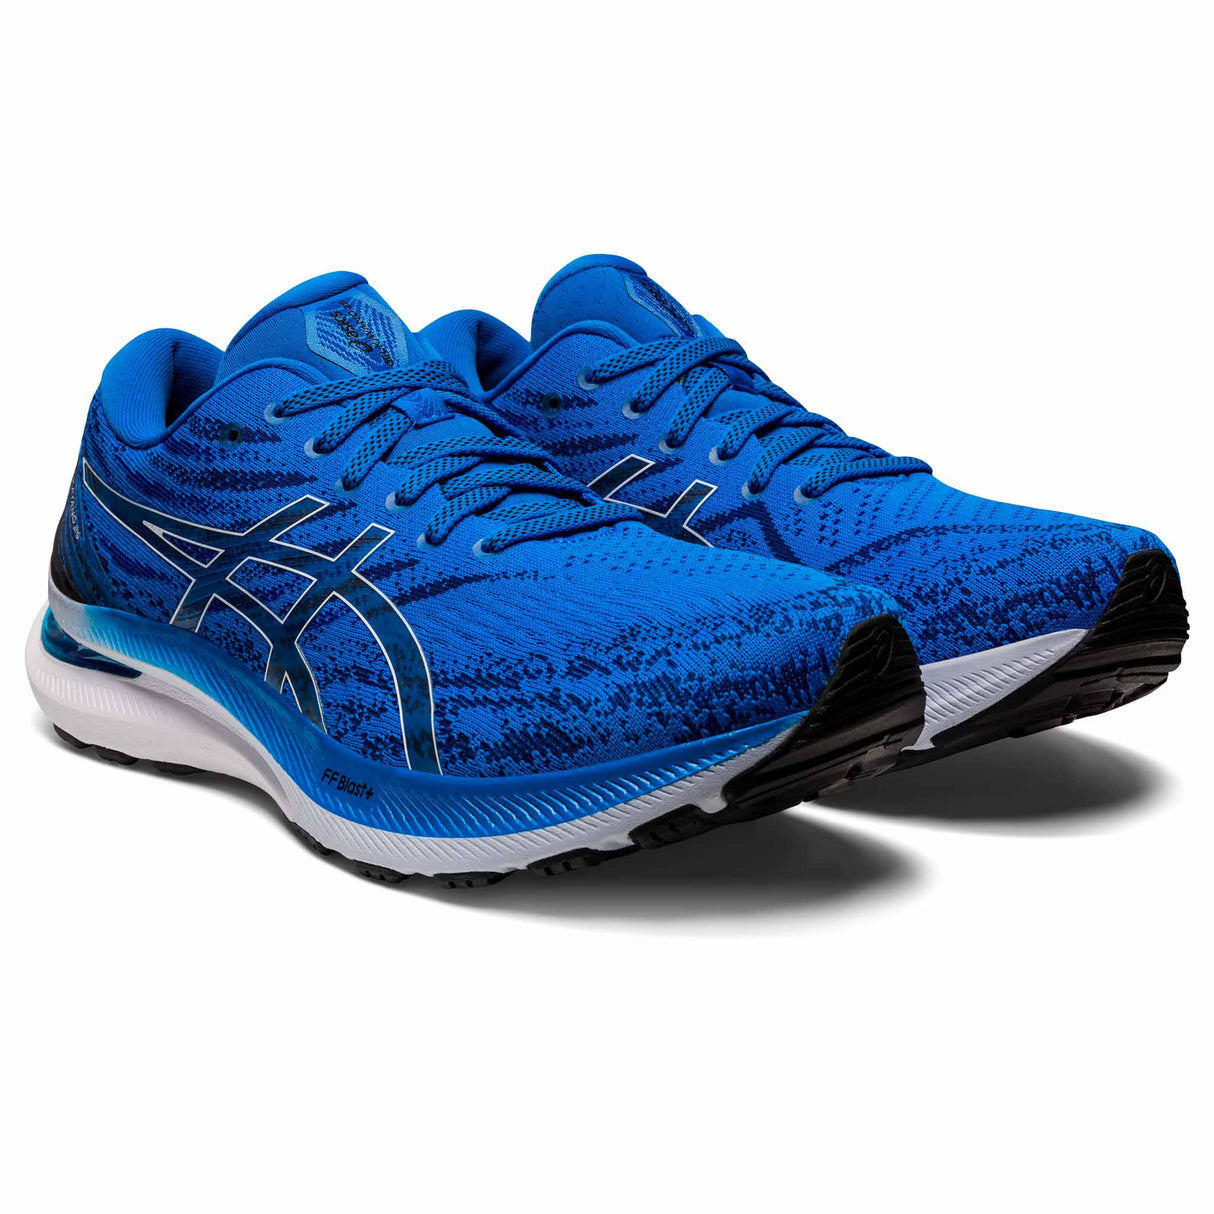 ASICS Gel Kayano 29 chaussures de course à pied pour homme - Electric Blue/White